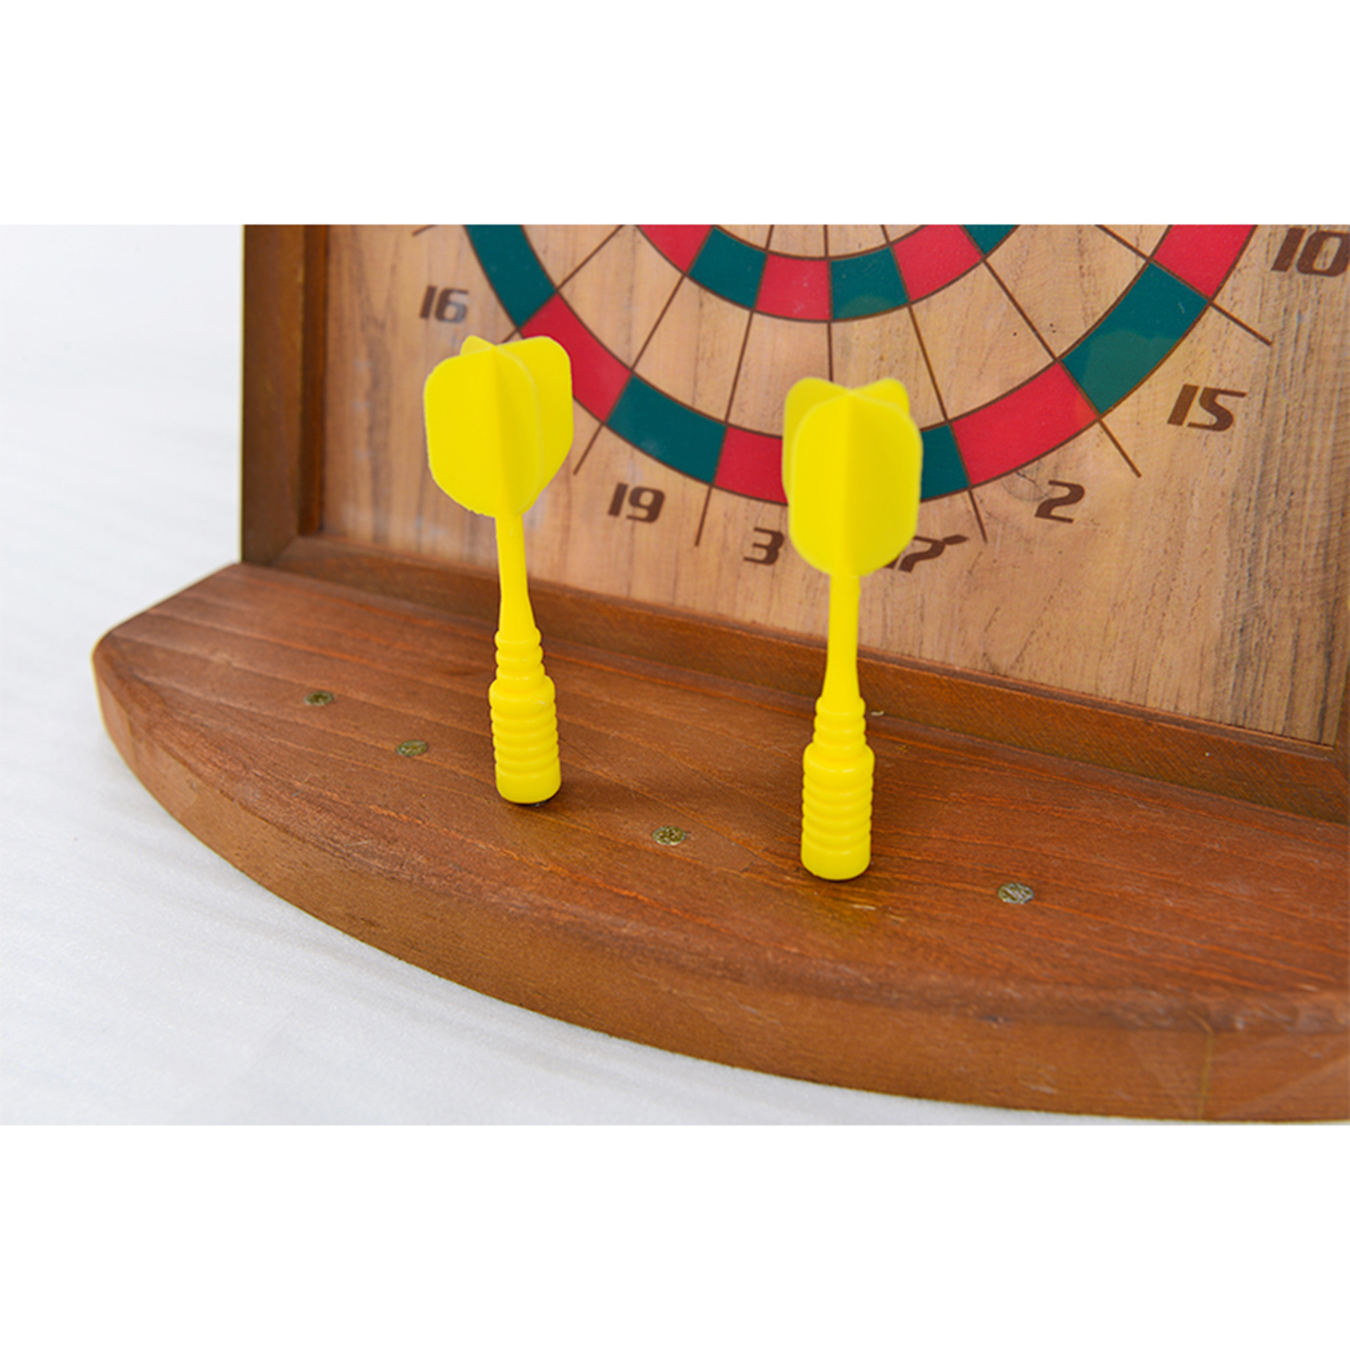 Dartboard Set with 6 Magnetic Darts Office Desk Game for Indoor Use desktop Magnetic Dart Board